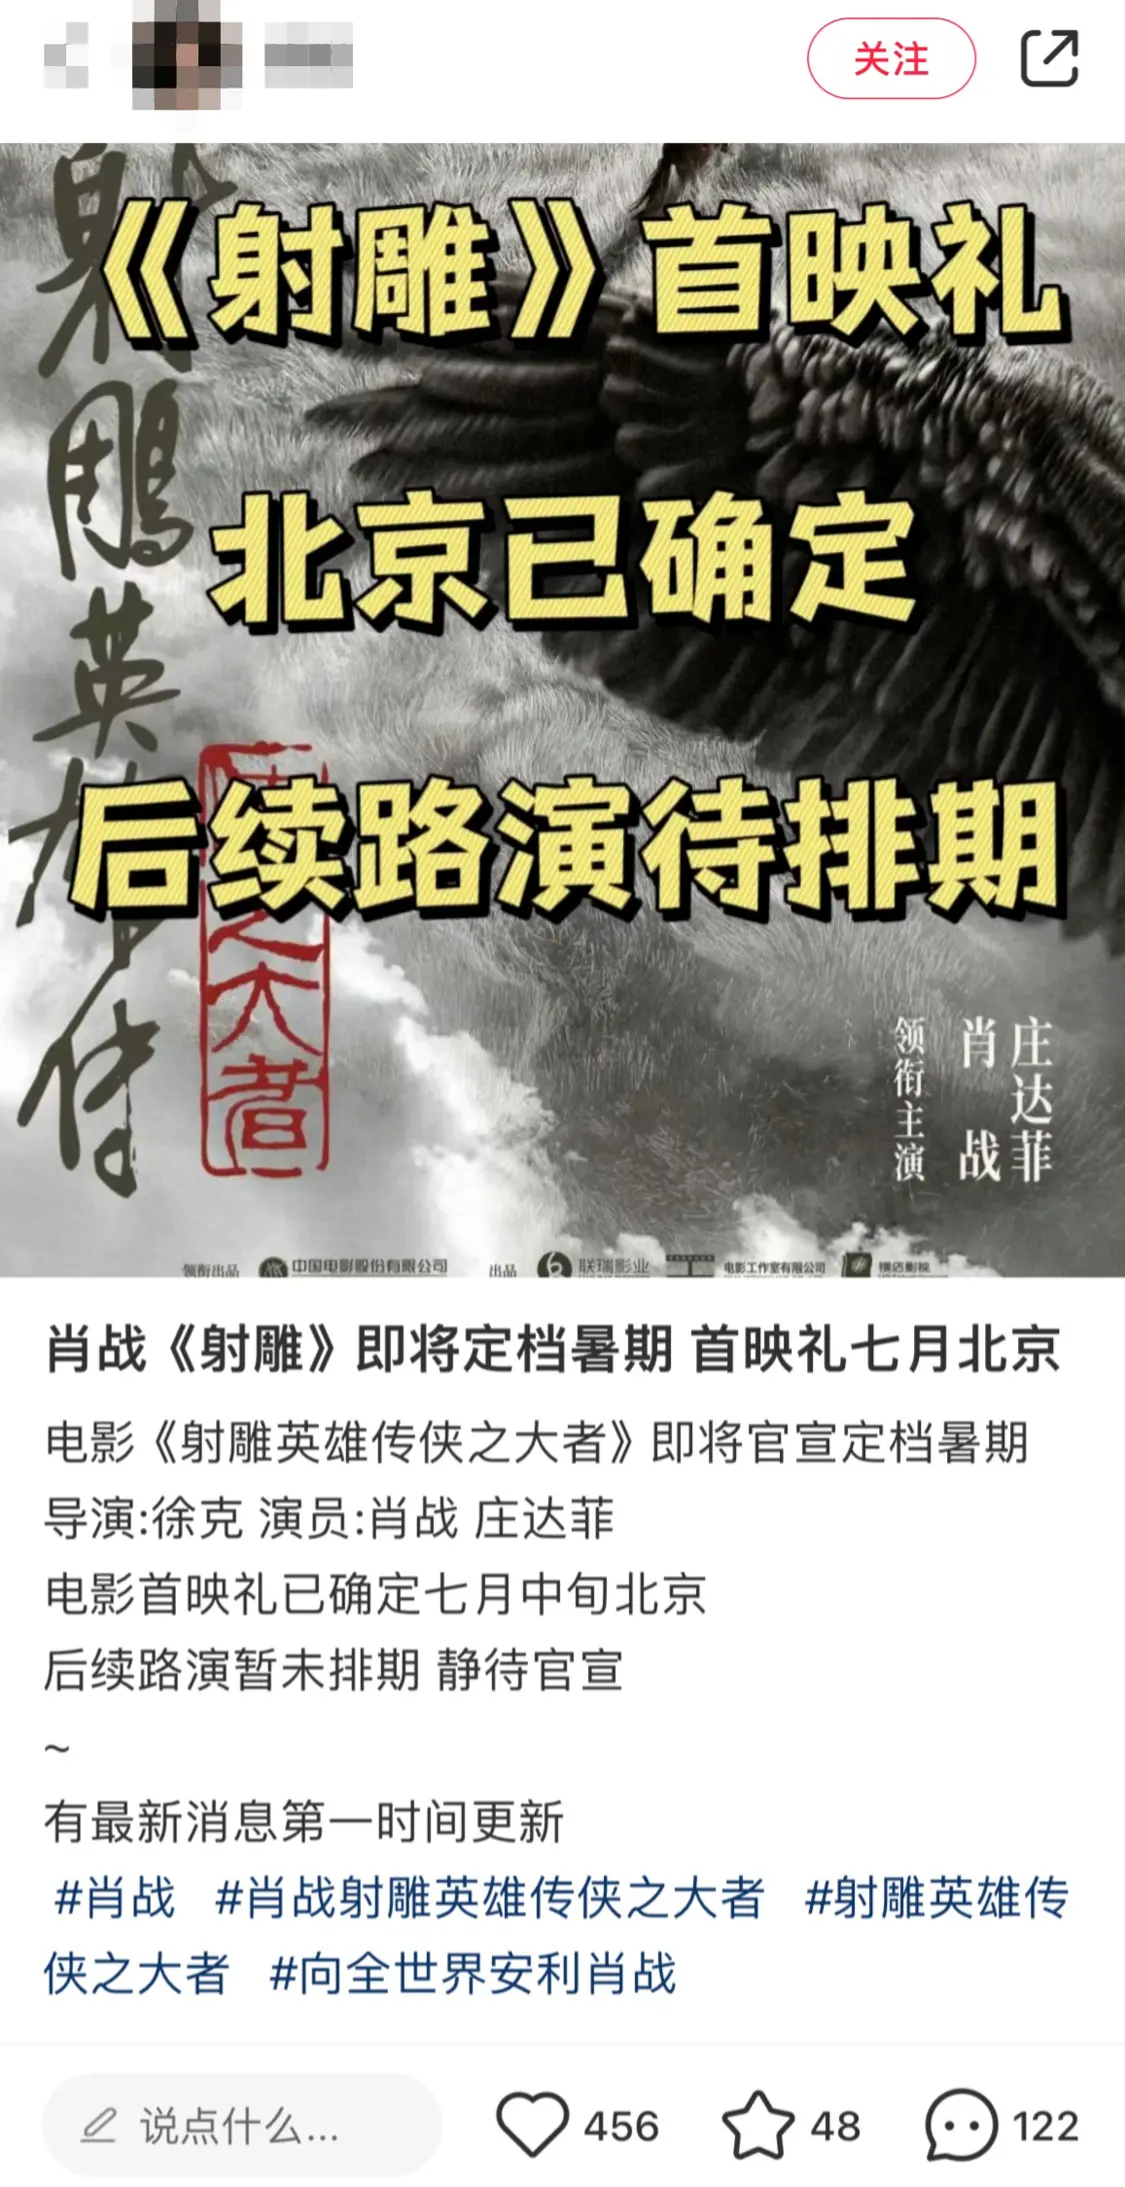 网传肖战版《射雕》定档暑期 首映礼七月北京举行